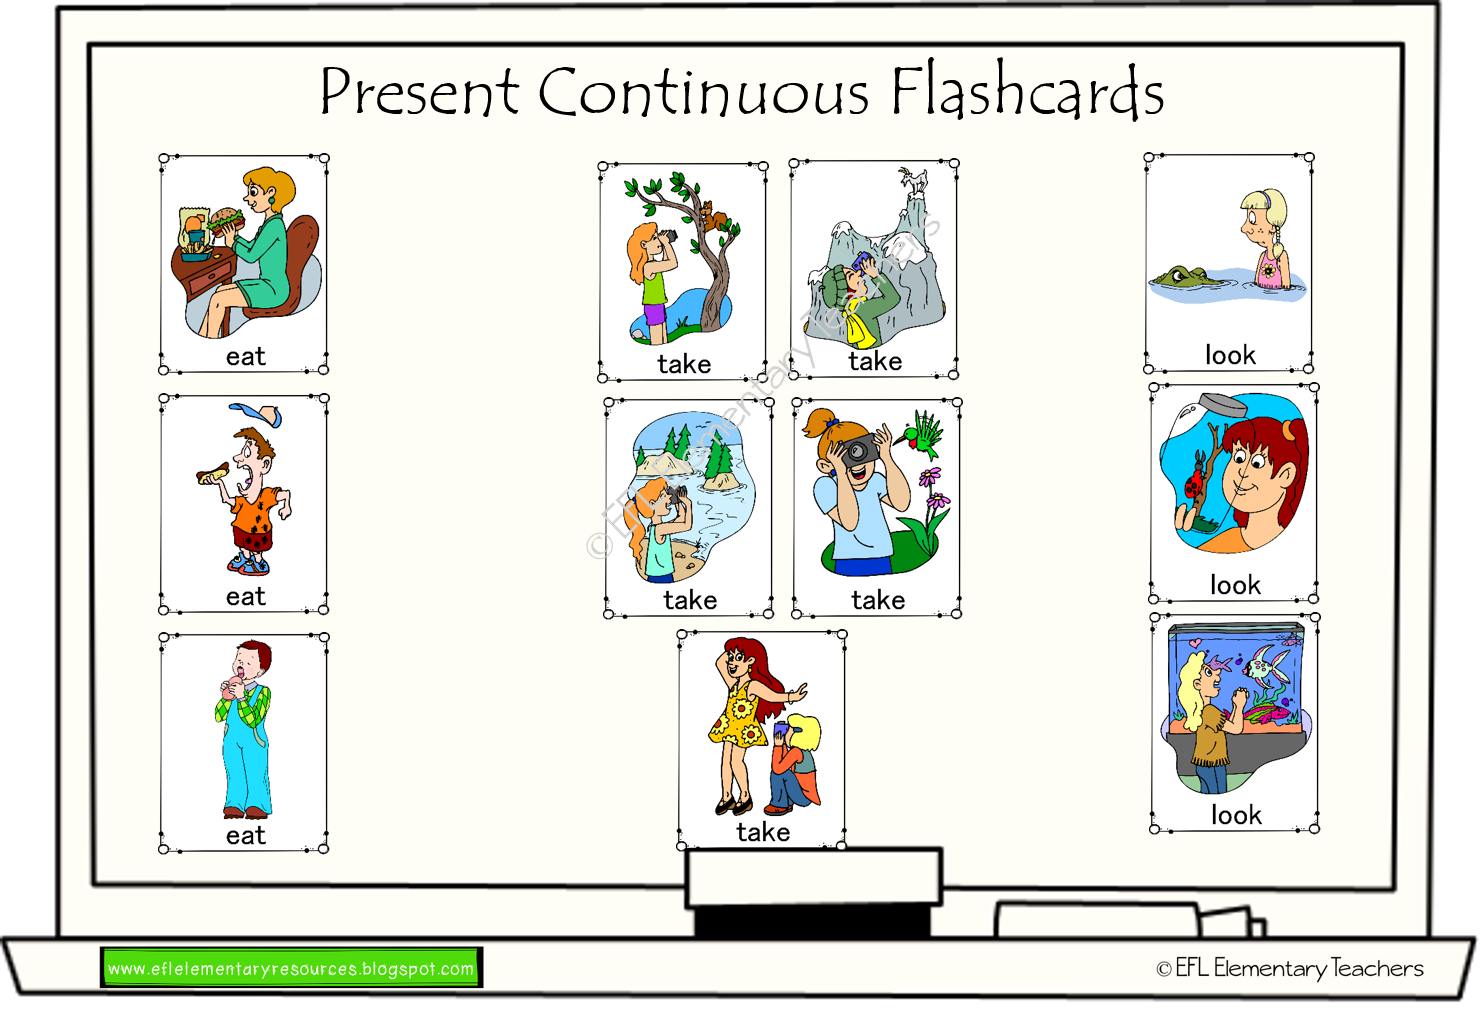 Описать картинку в present Continuous. Present Continuous описание. Present Continuous игра. Present Continuous задания. Continuous game for kids